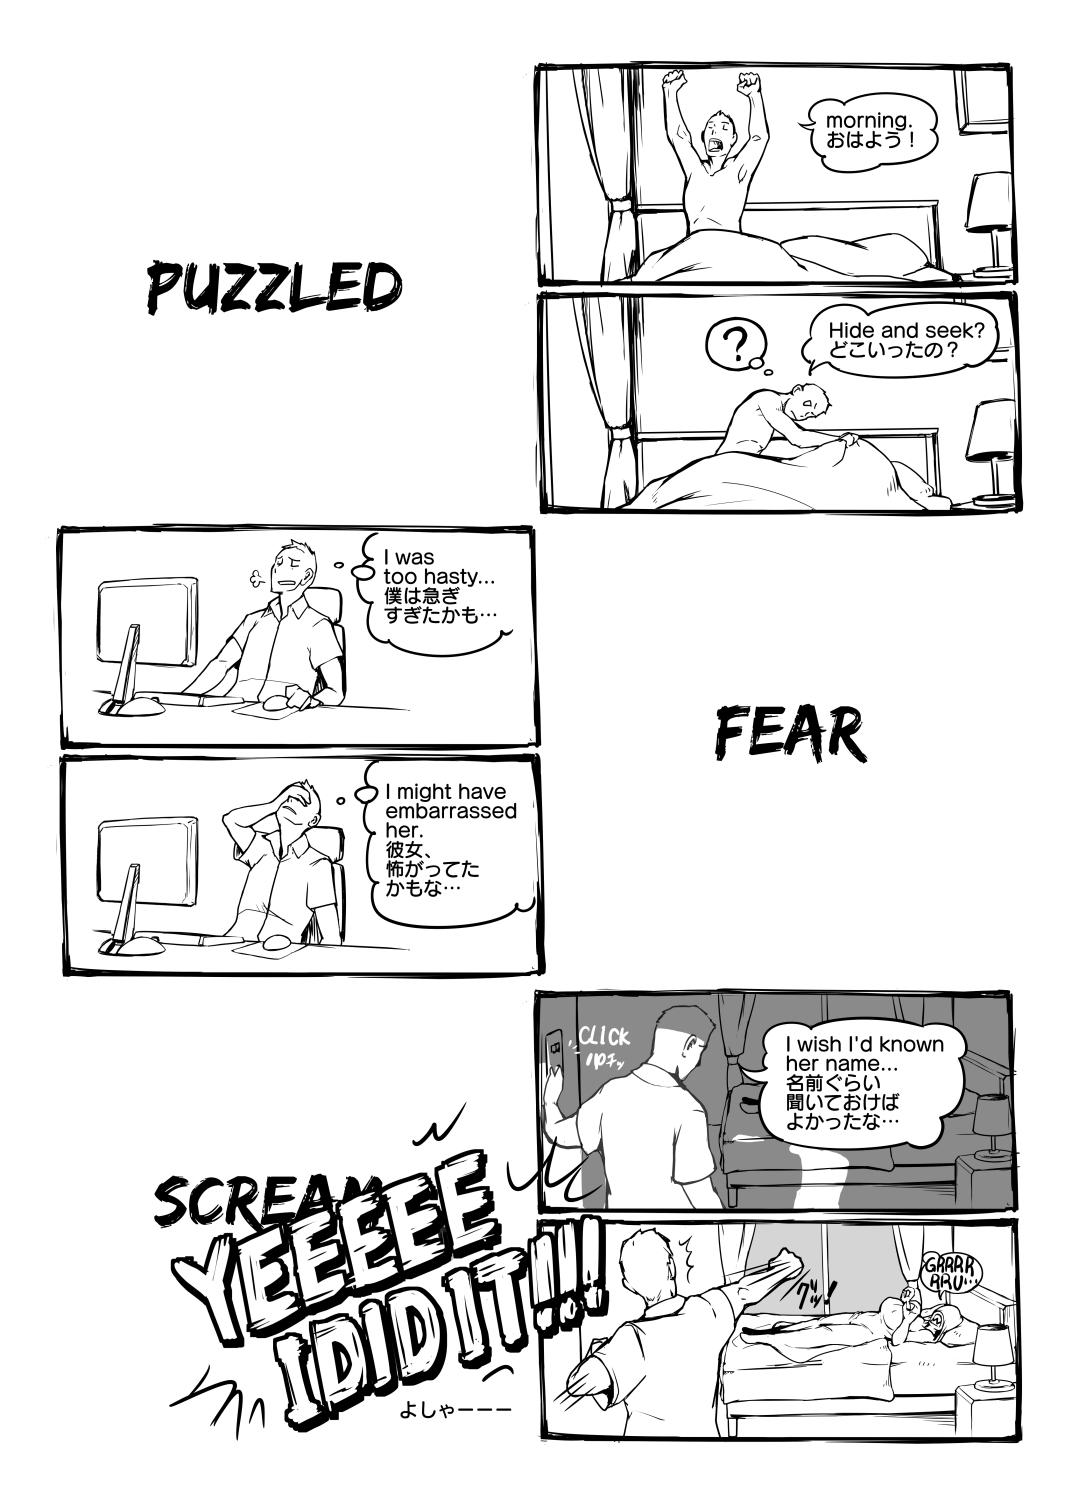 Stripper Fear and Scream - Original Hotel - Page 4